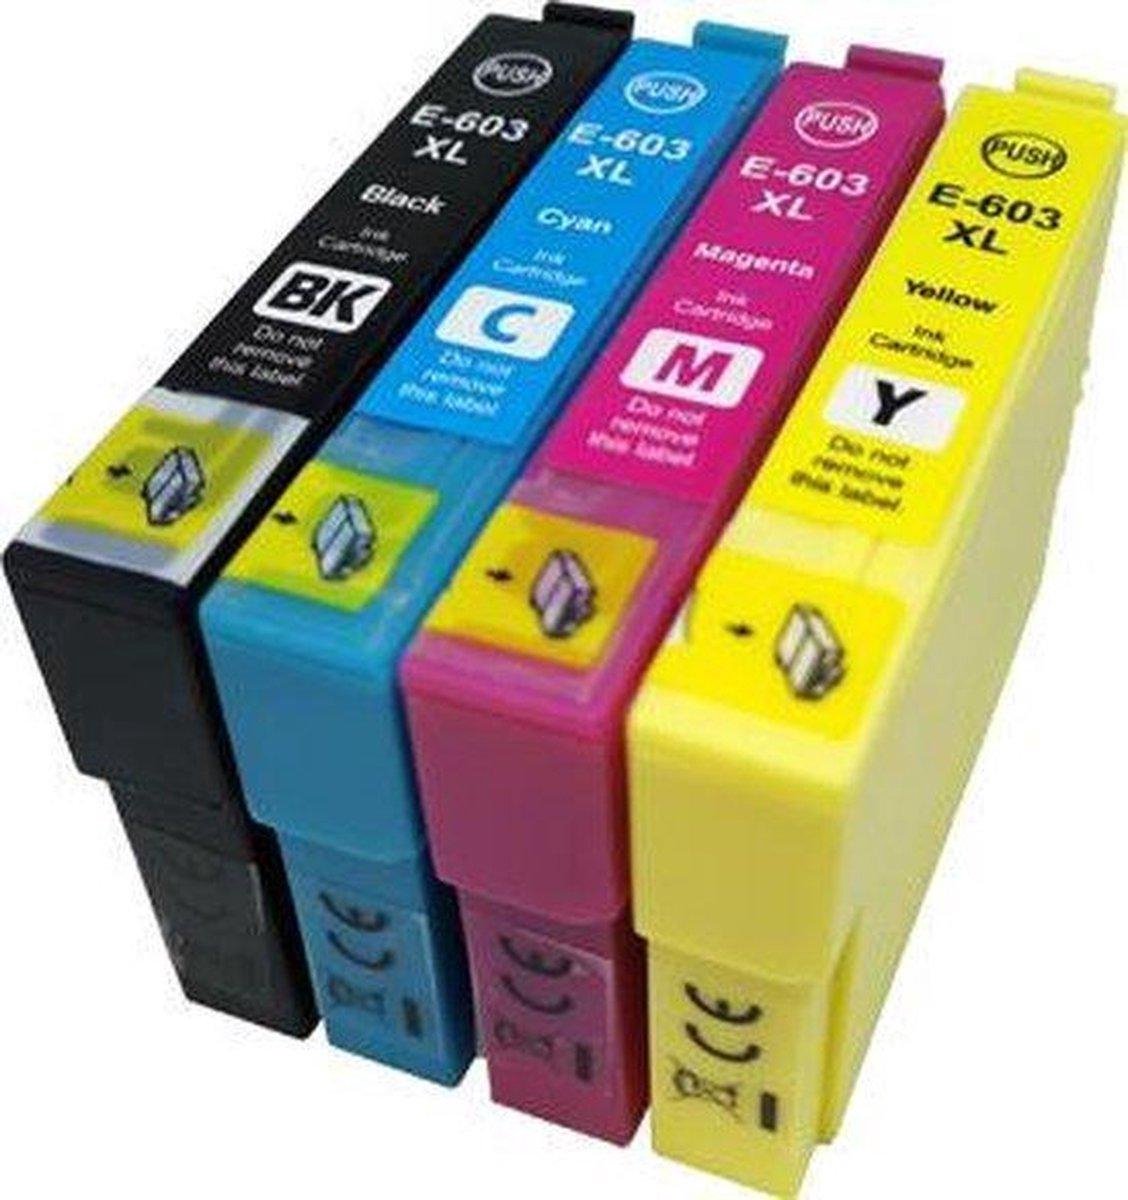 Cartouche d'encre / Pack multiple alternatif pour Epson 603 XL noir, bleu,  toit, jaune